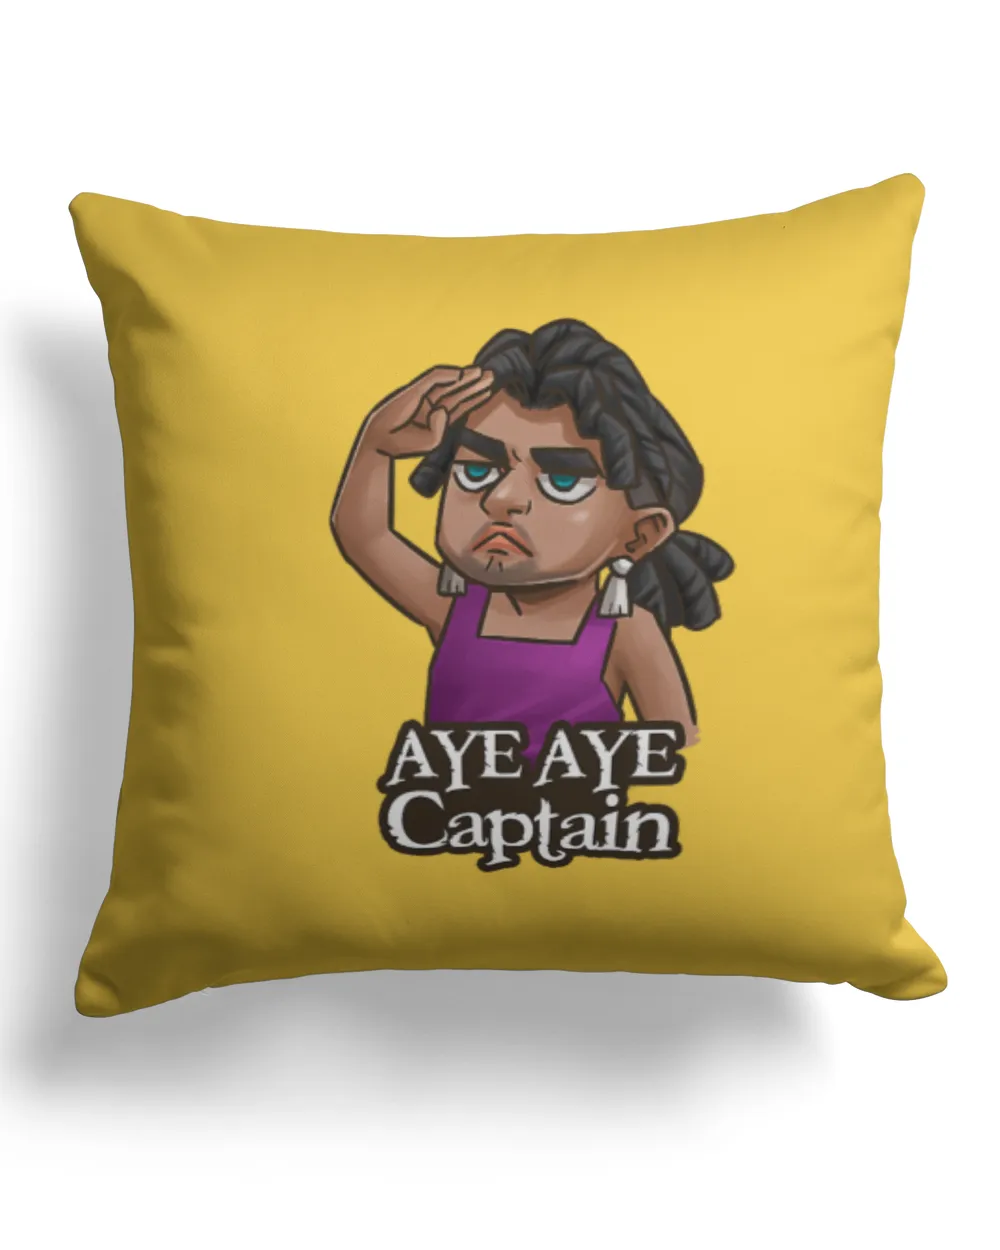 Aye aye captain - pillow crypto